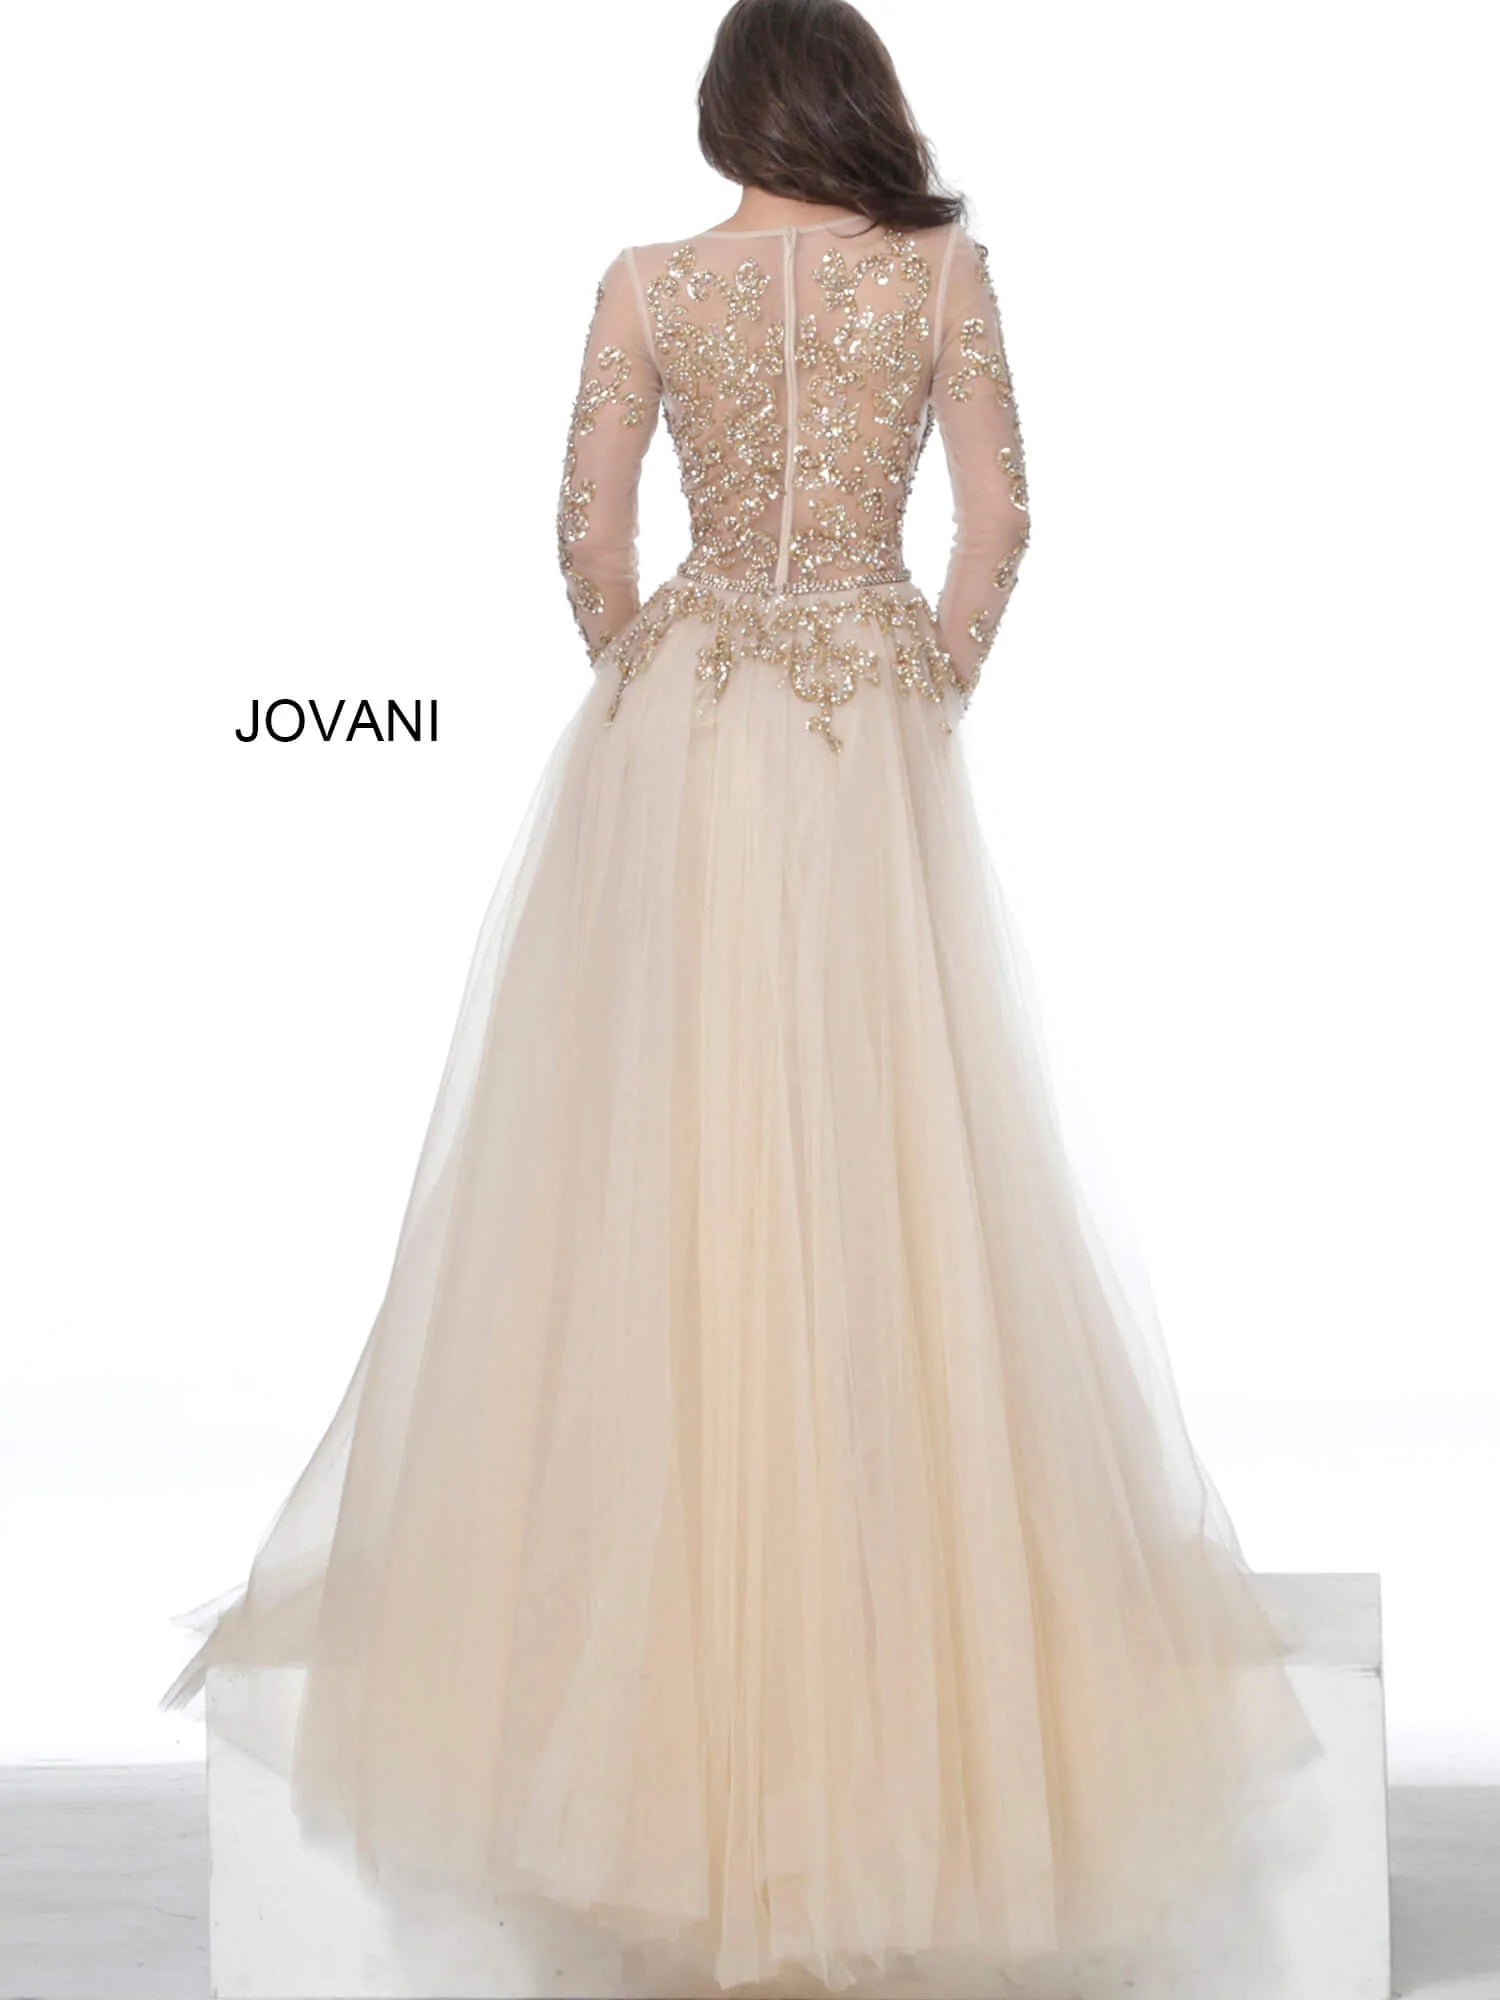 Jovani 00638 Dress